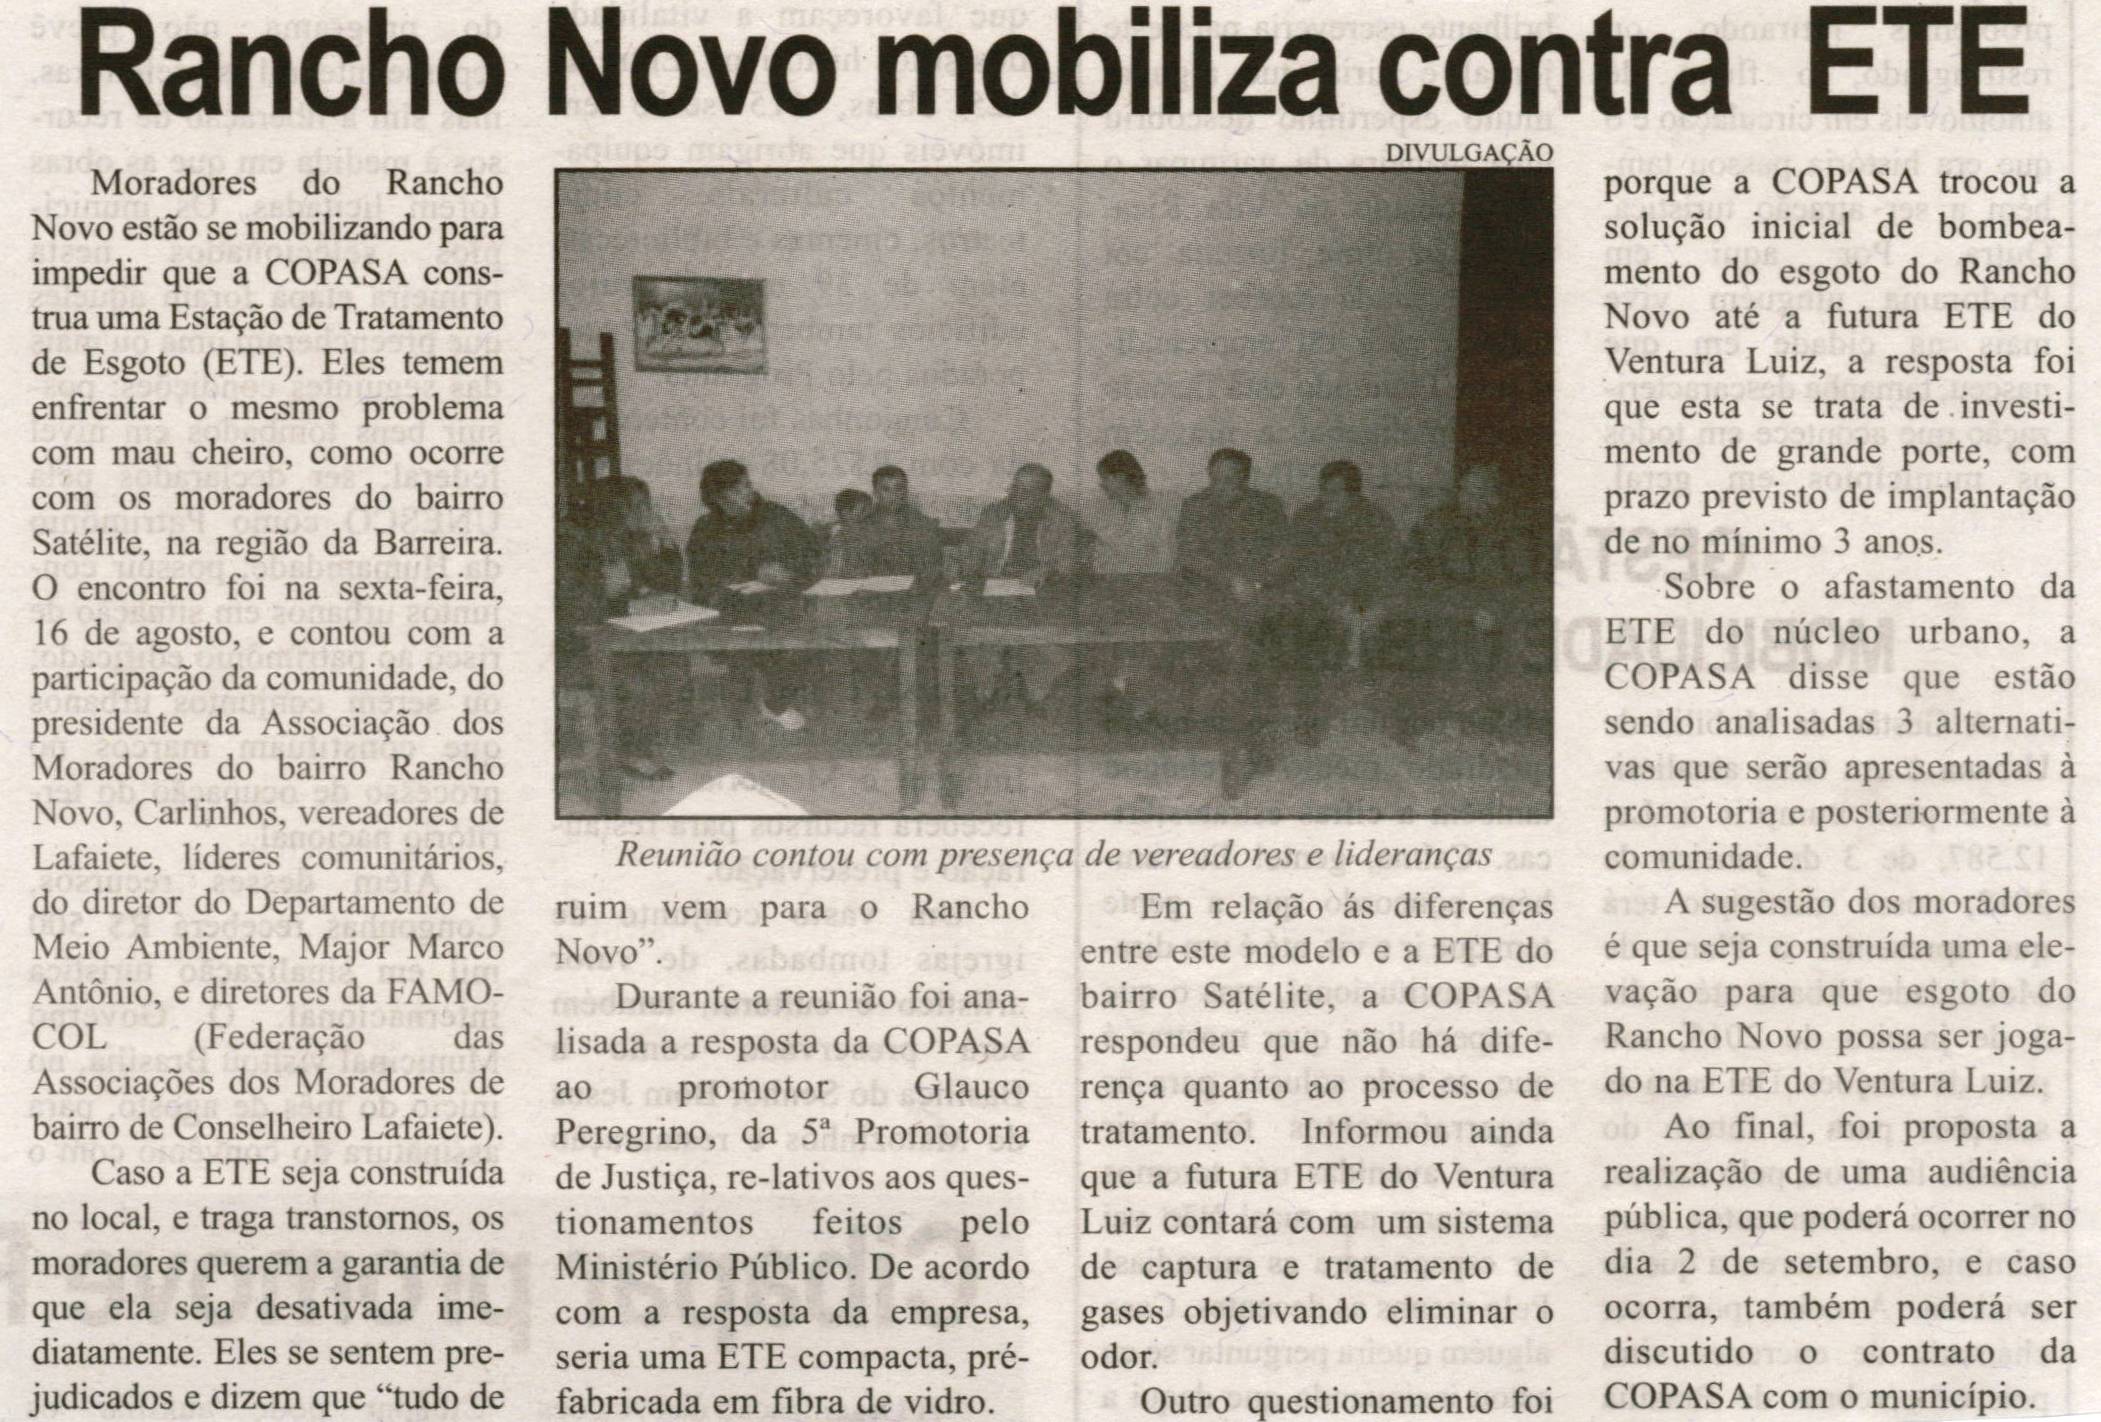 Rancho Novo mobiliza contra ETE. Correio de Minas, Conselheiro Lafaiete, 24 ago. 2013, p. 03.